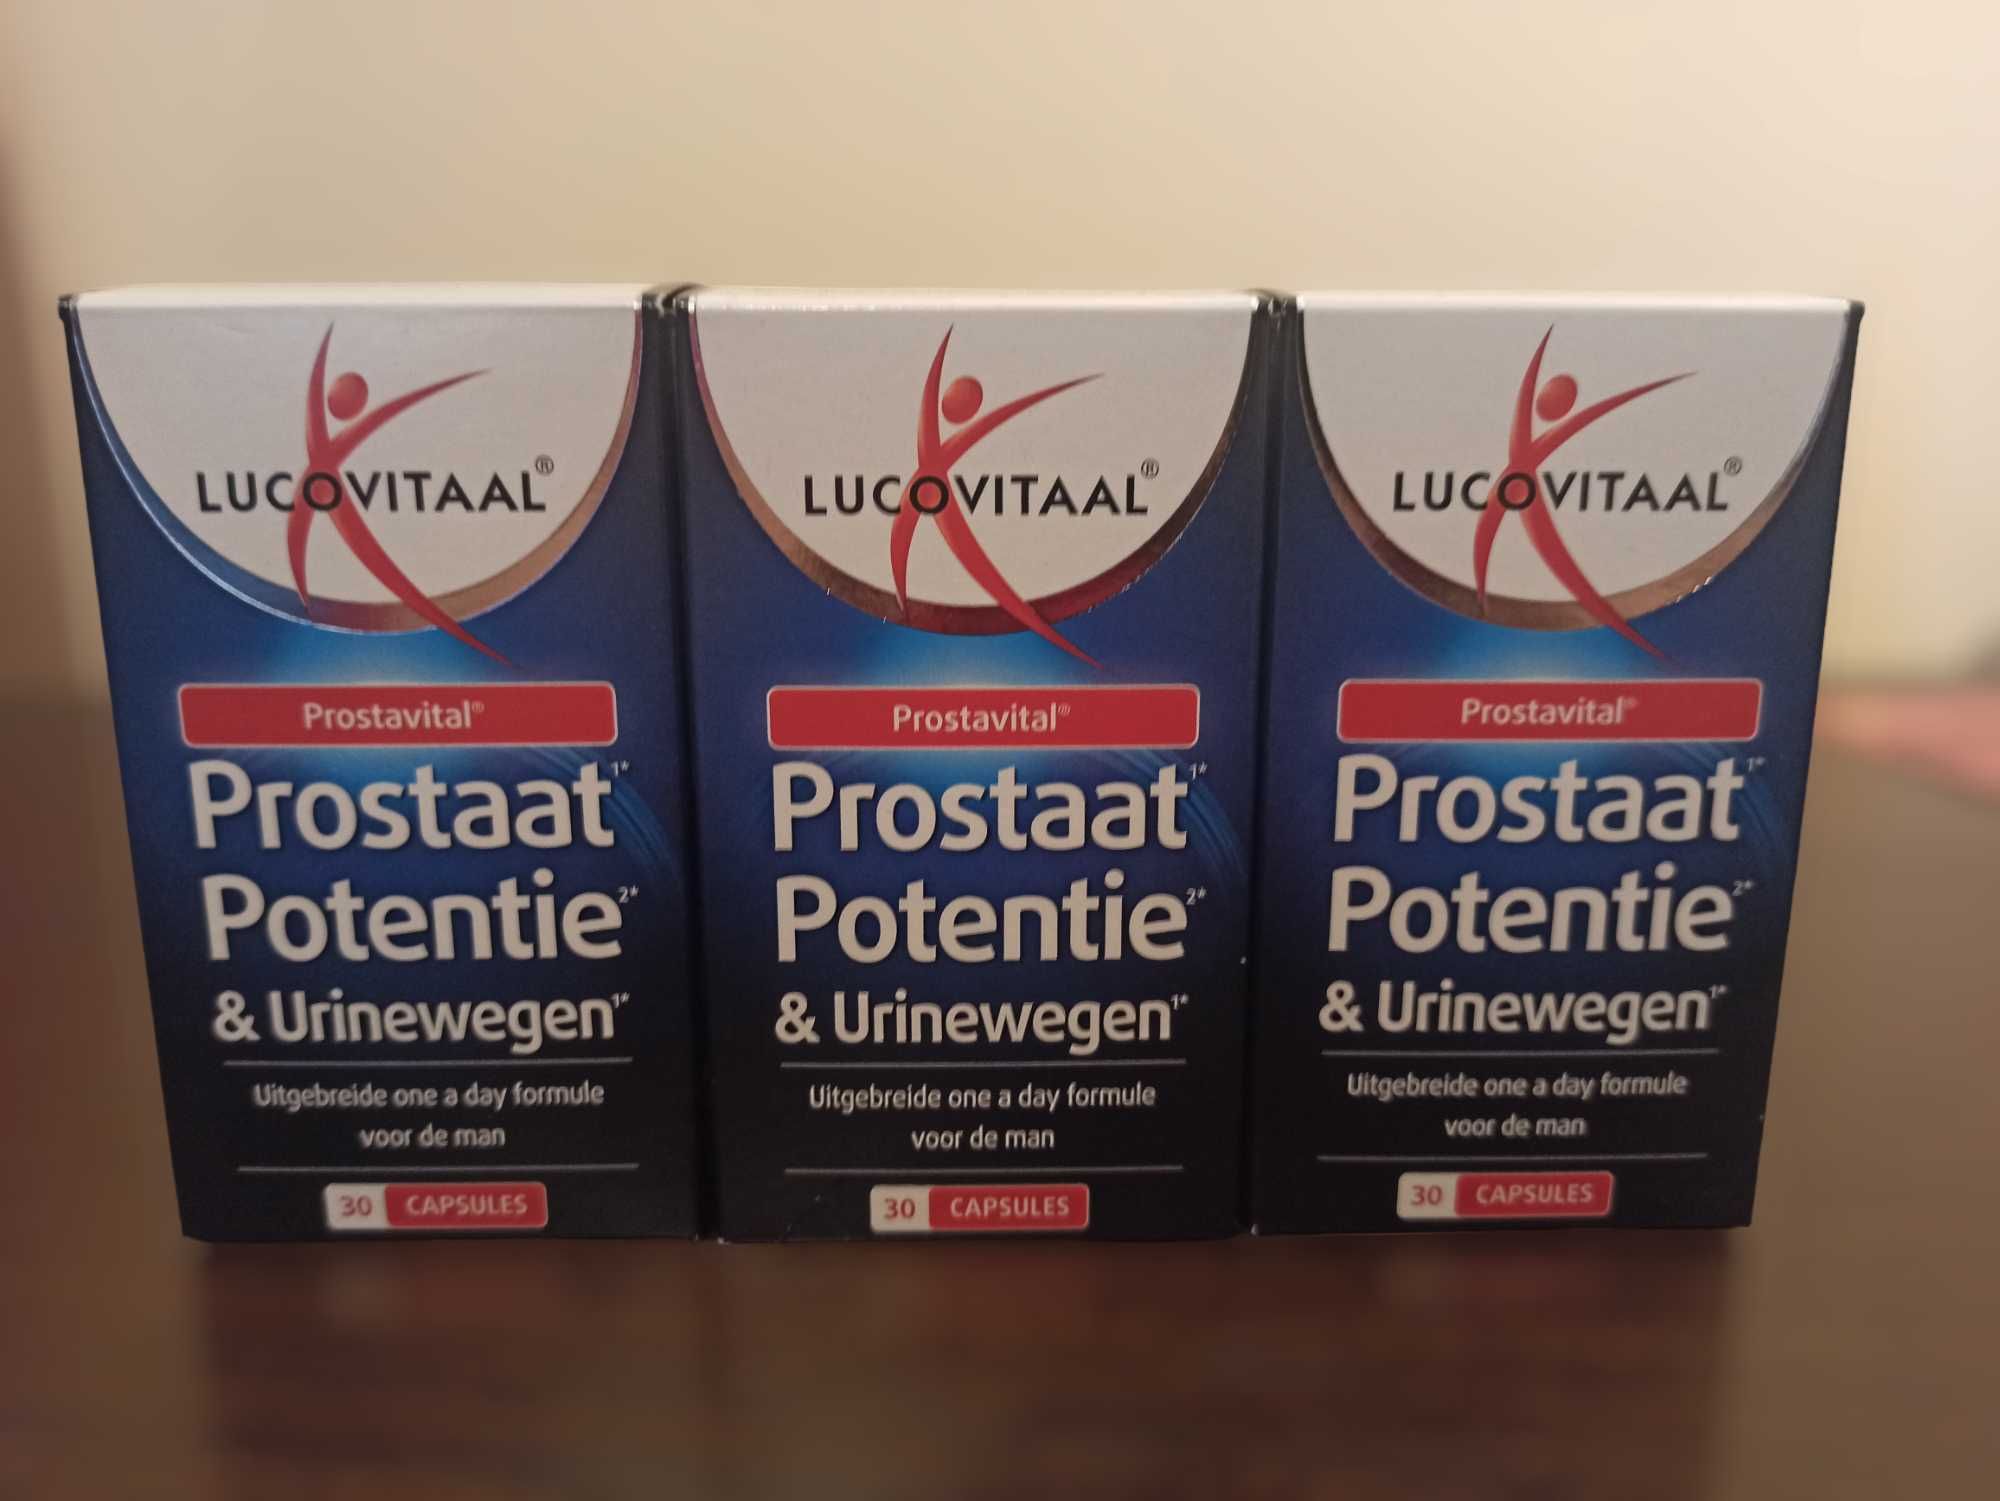 Lucovitaal Prostaat Potentie & Urinewegen 30 Caps